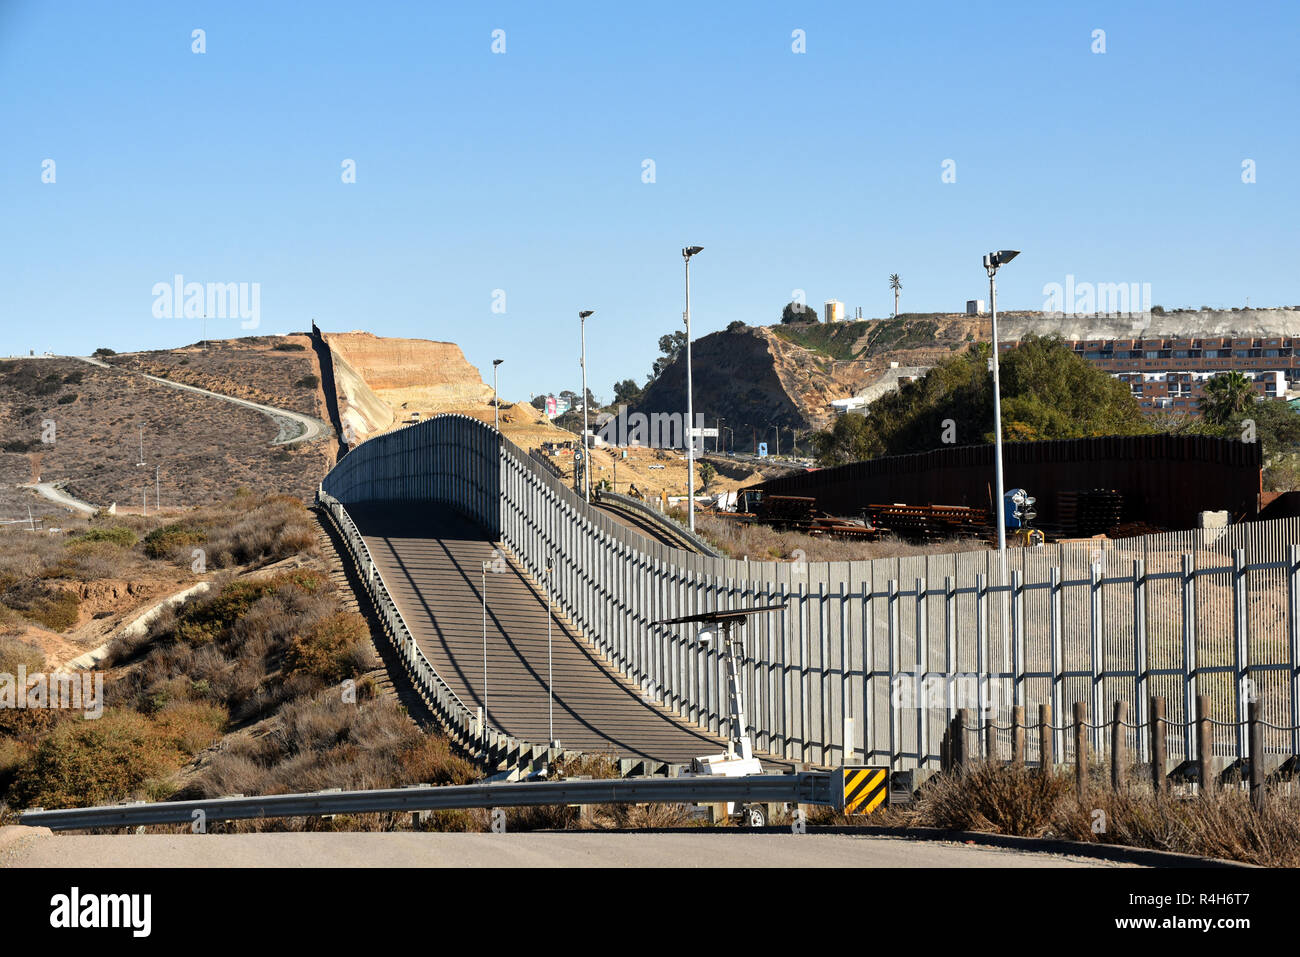 SAN YSIDRO, CALIFORNIA - NOVEMBER 26, 2018: The USA Mexico Border Wall seen from International Friendship Park on the US side looking towards Tijuana. Stock Photo